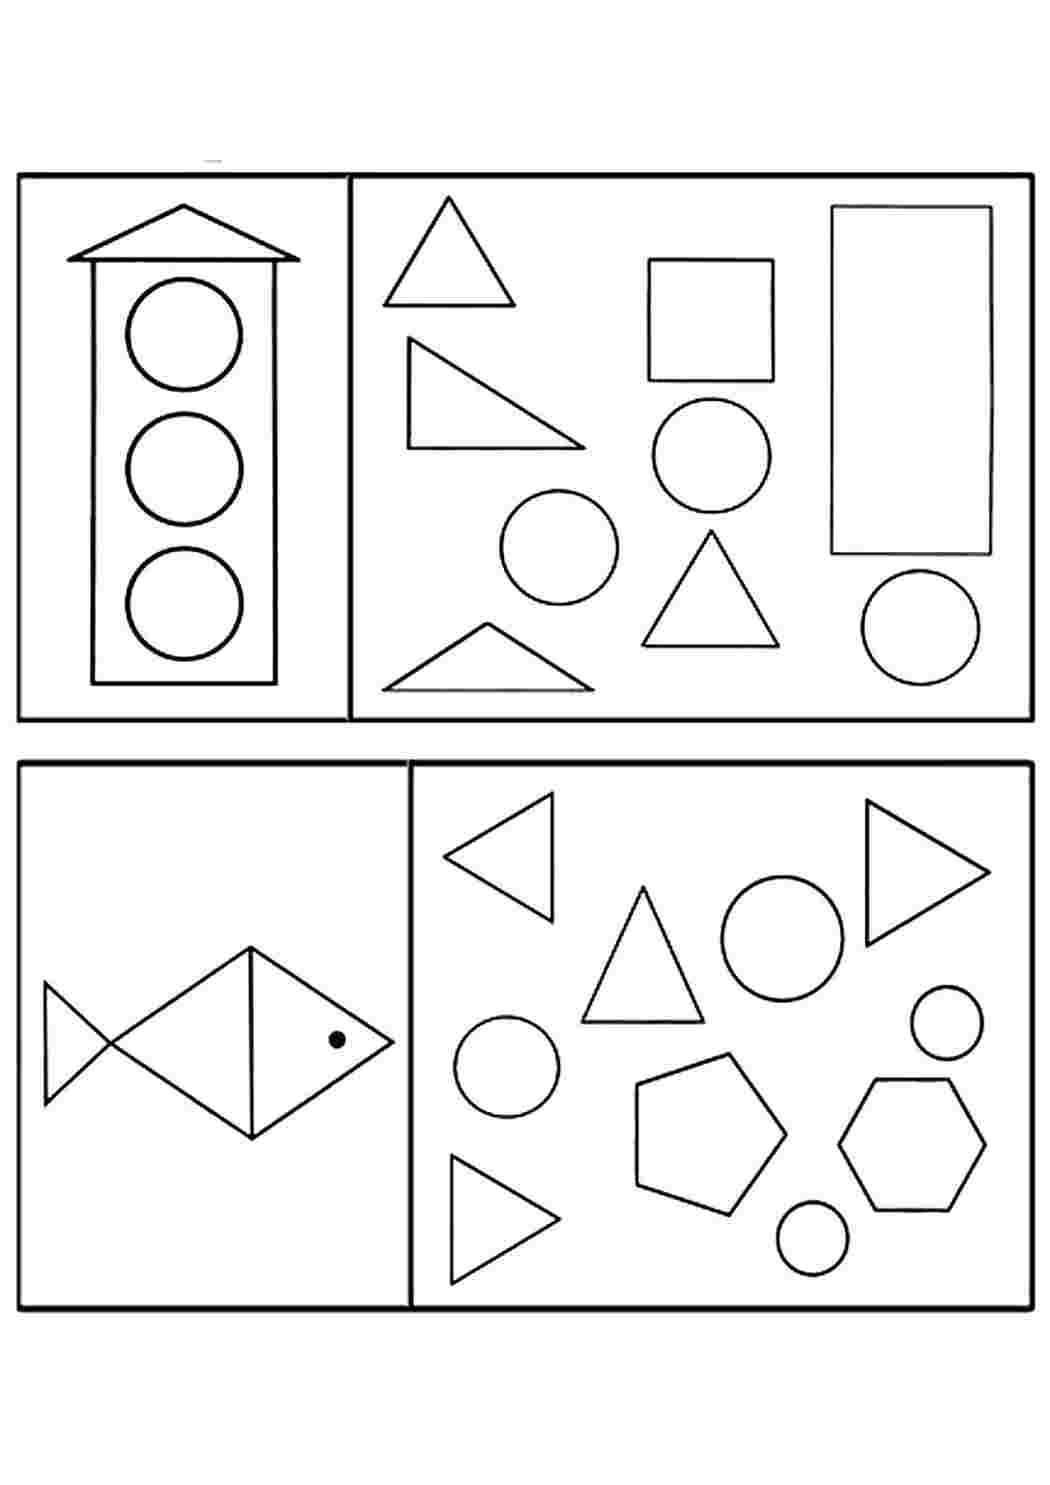 Математика старшая группа распечатать. Задания с геом фигурами для дошкольников. Задания по ФЭМП для дошкольников фигуры. Задания по геометрическим фигурам для дошкольников. Задания по ФЭМП для детей 4-5 лет.